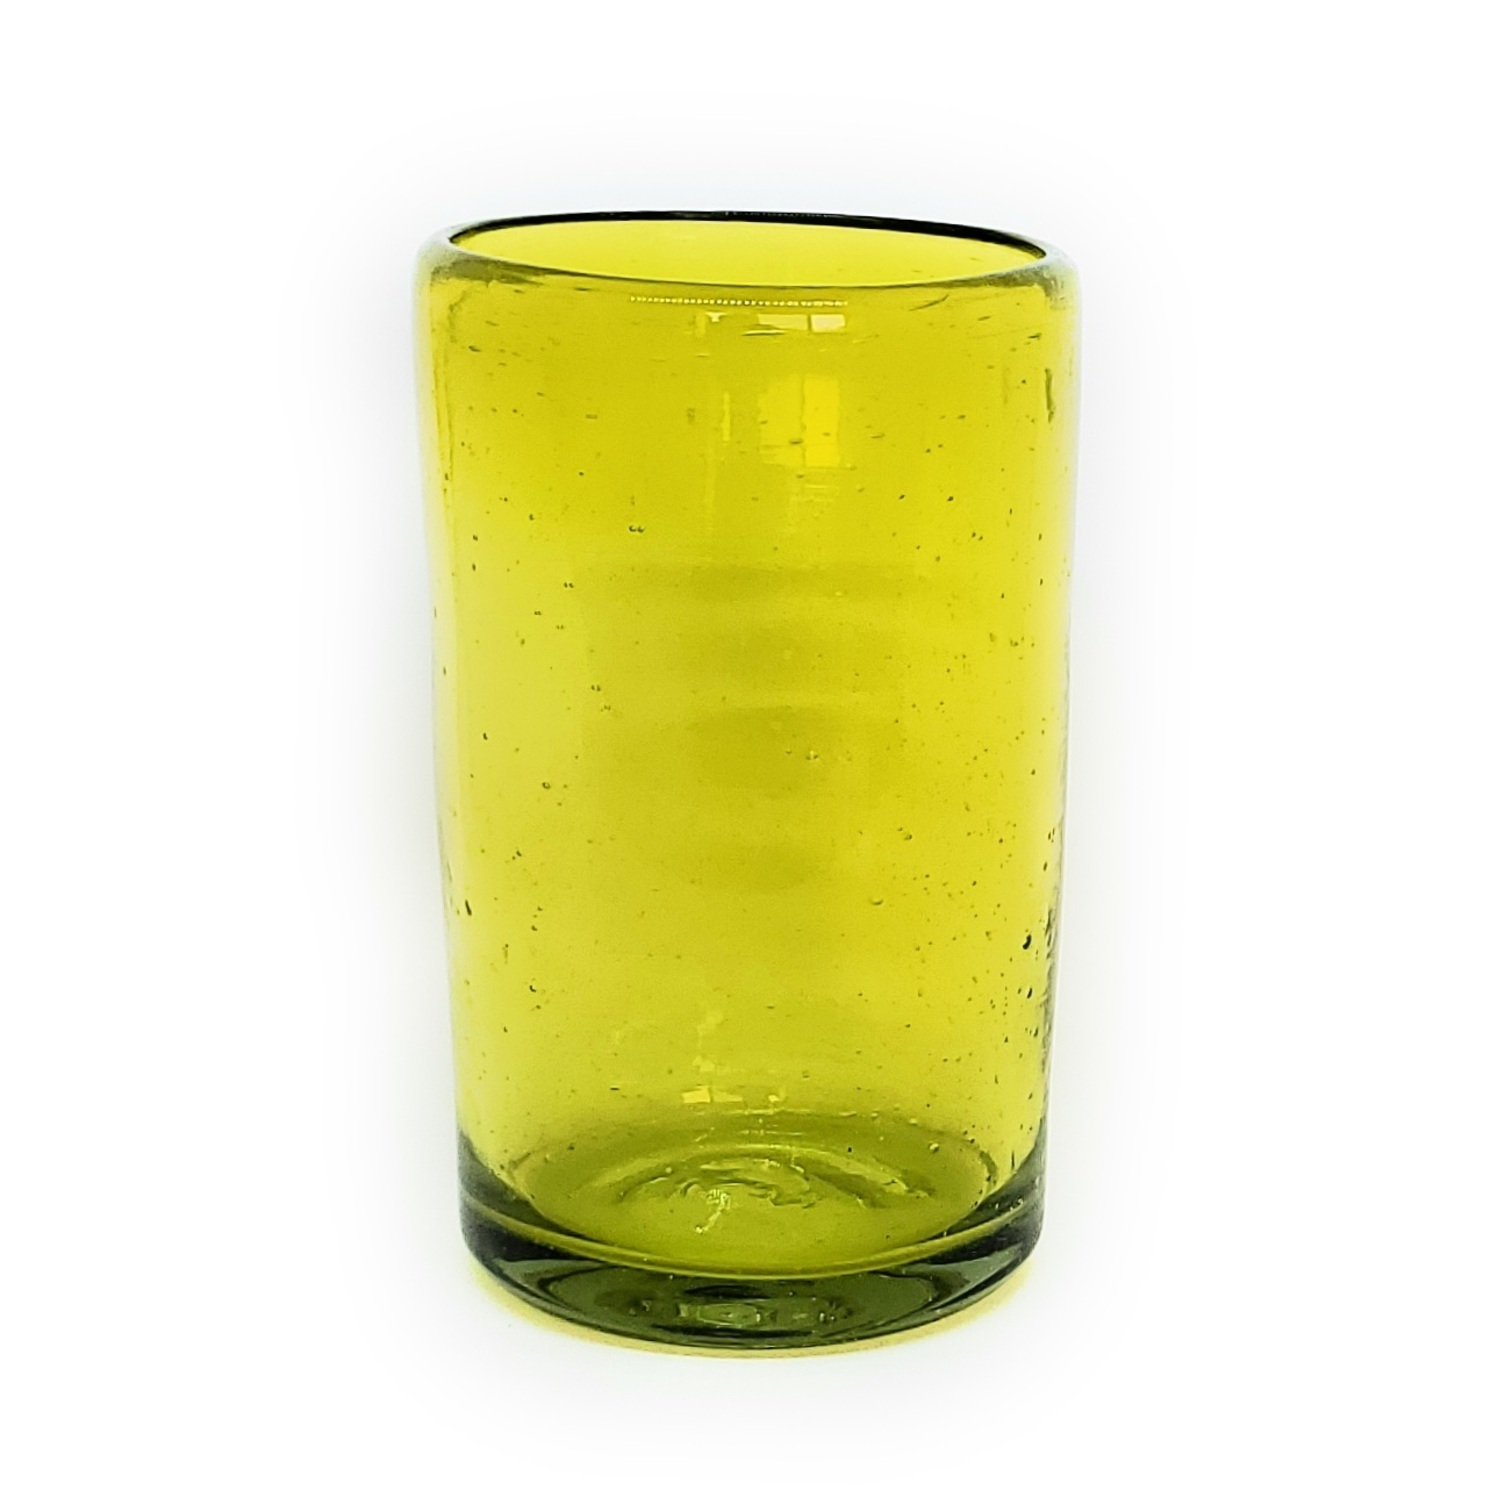 VIDRIO SOPLADO al Mayoreo / vasos grandes color amarillos / Éstos artesanales vasos le darán un toque clásico a su bebida favorita.